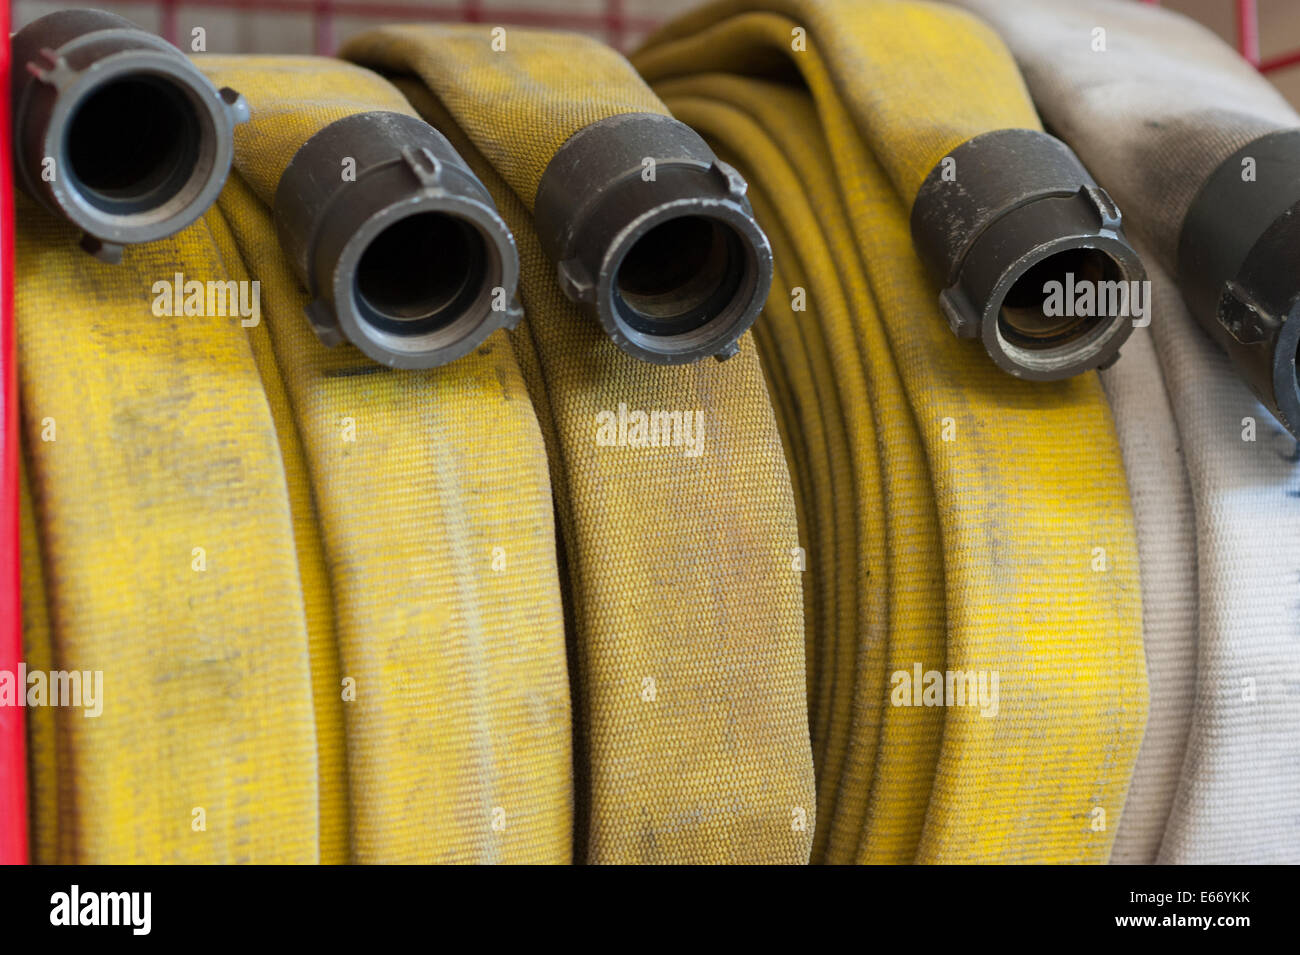 Manguera de bomberos - Manguera de agua plana de 2 1/2 pulgadas x 50 pies -  Fabricado en los Estados Unidos - Manguera de bomberos blanca 